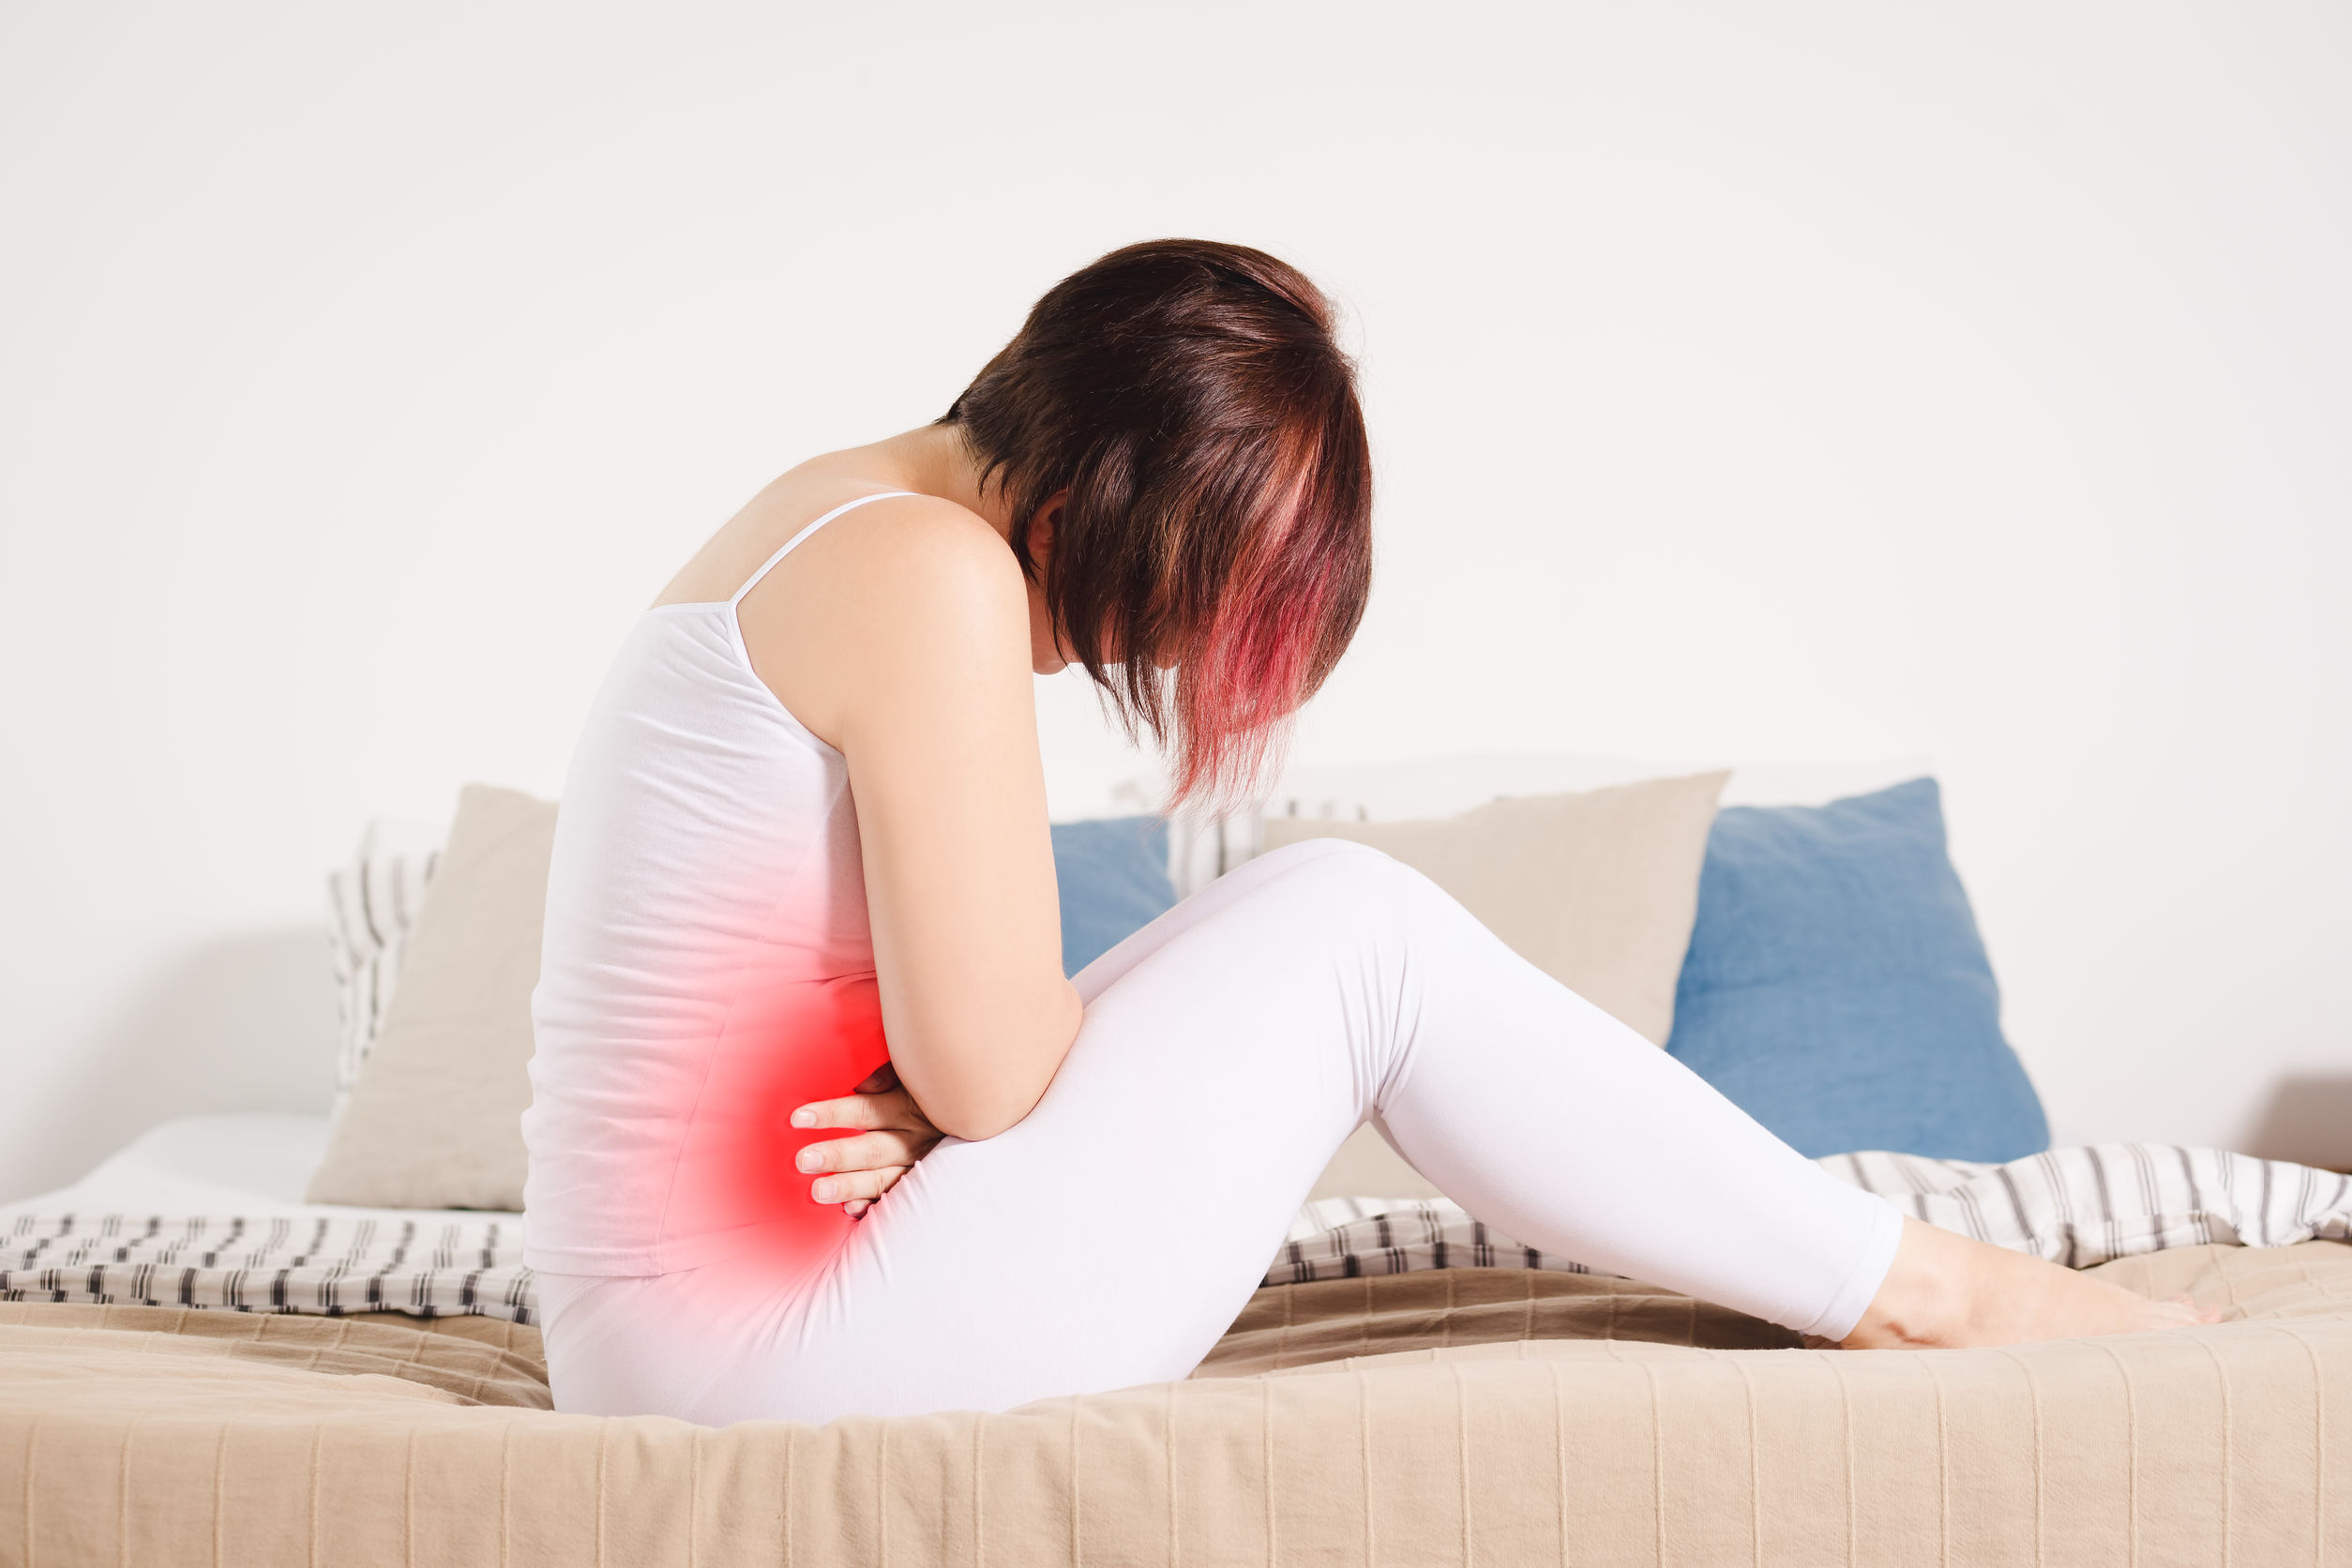 dr-angela-Endometriosis-symptoms-woman-in-pain